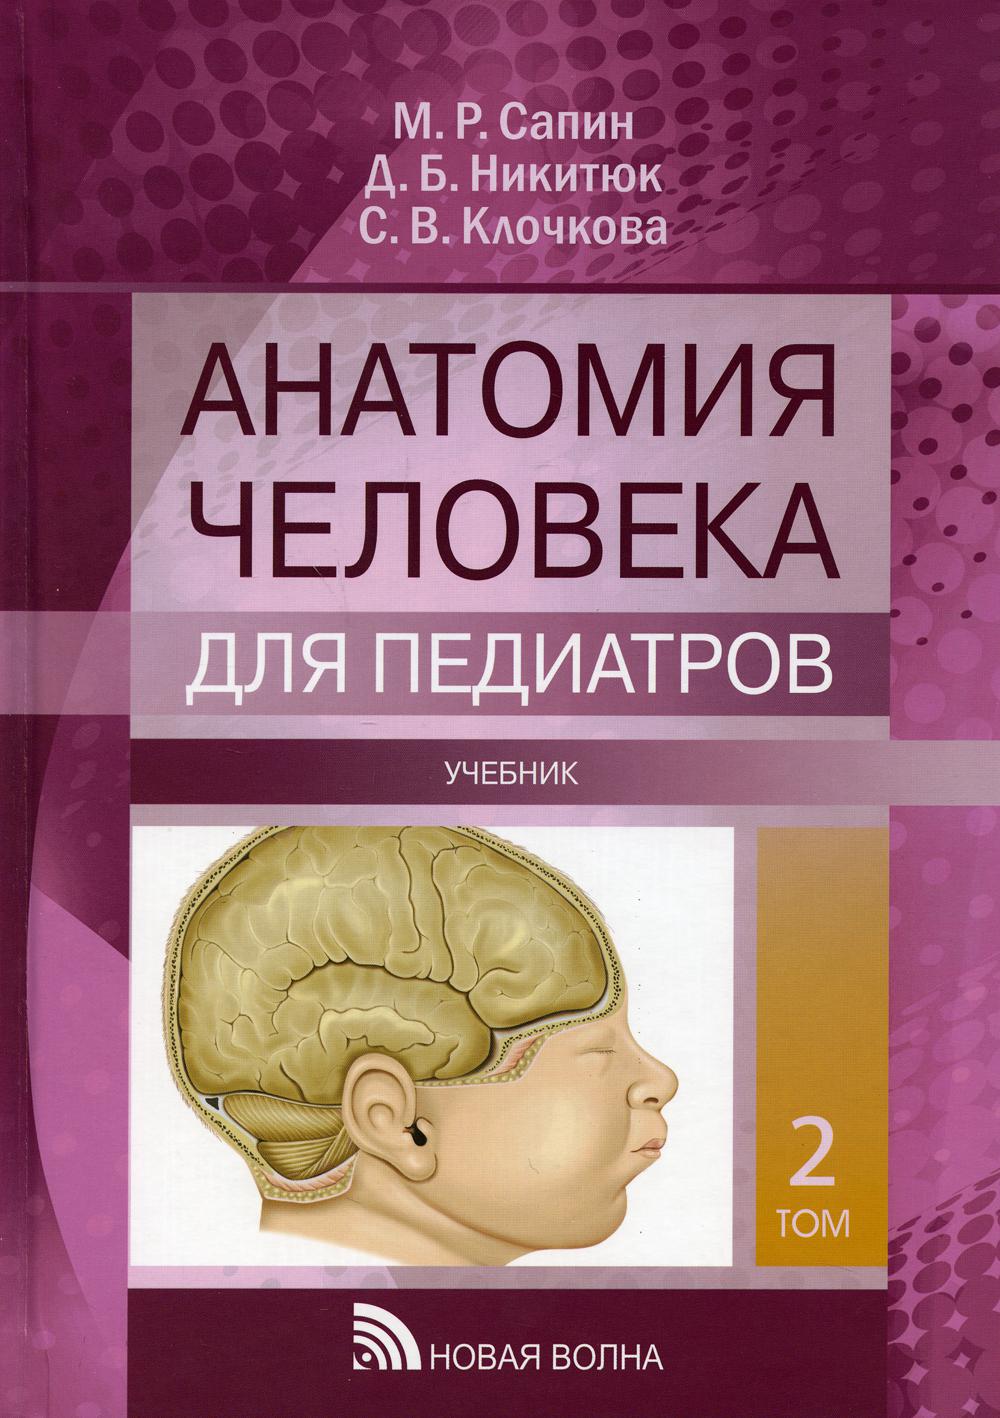 фото Книга анатомия человека для педиатров в 2 т.: т. ii новая волна